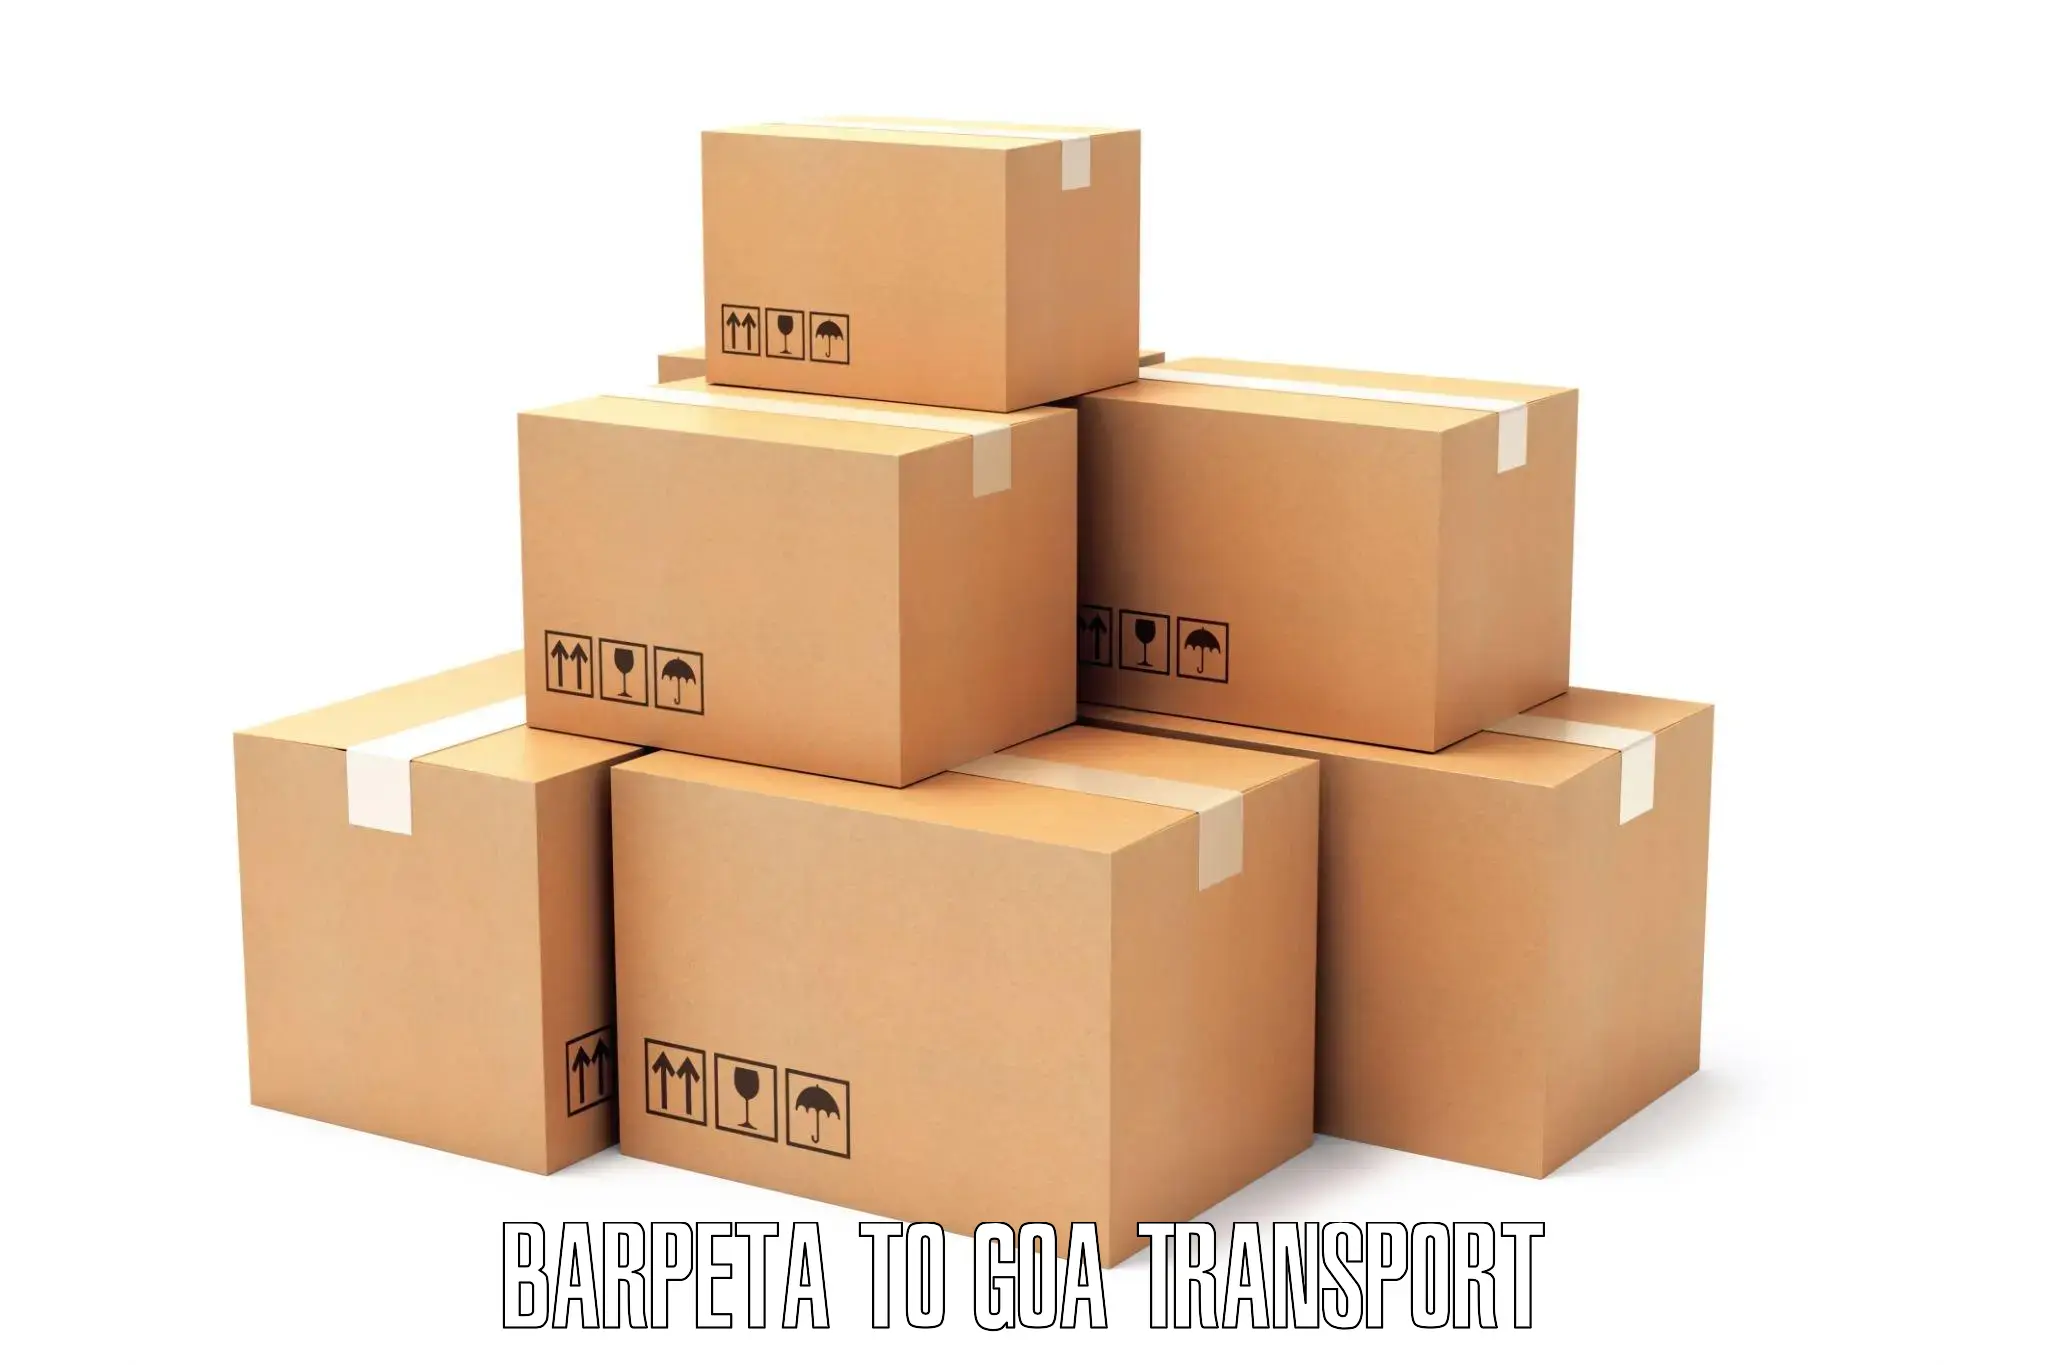 Shipping services Barpeta to South Goa